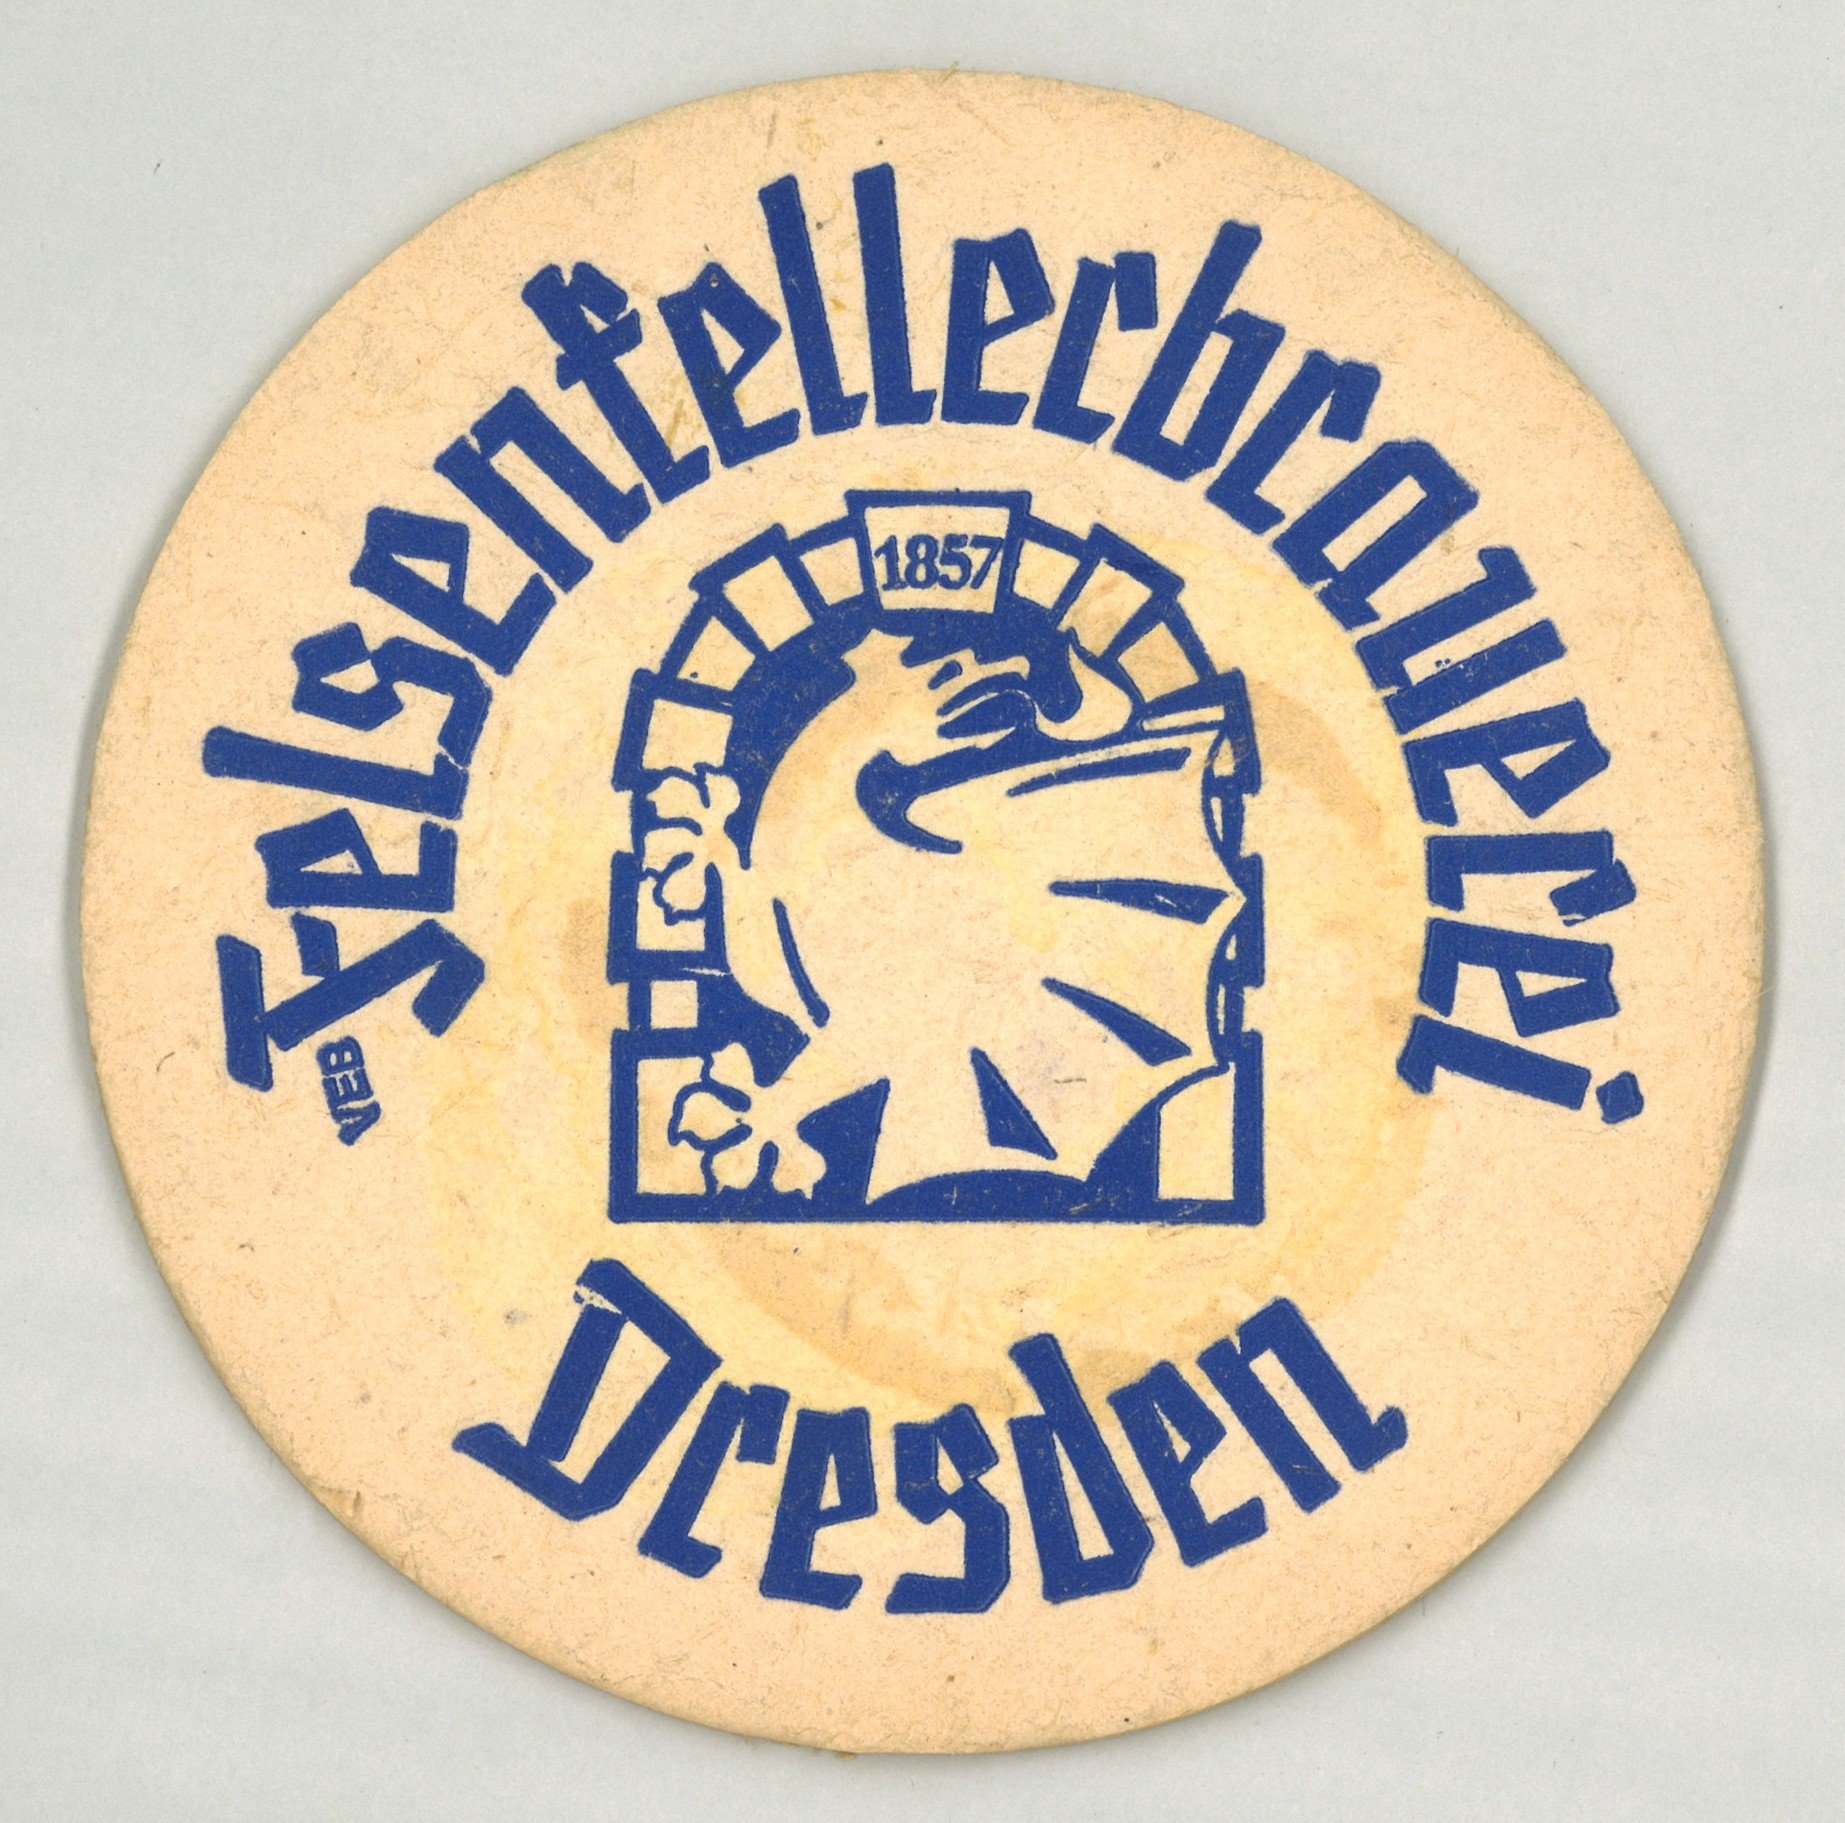 Dresden: VEB Felsenkellerbrauerei Dresden (Landesgeschichtliche Vereinigung für die Mark Brandenburg e.V., Archiv CC BY)